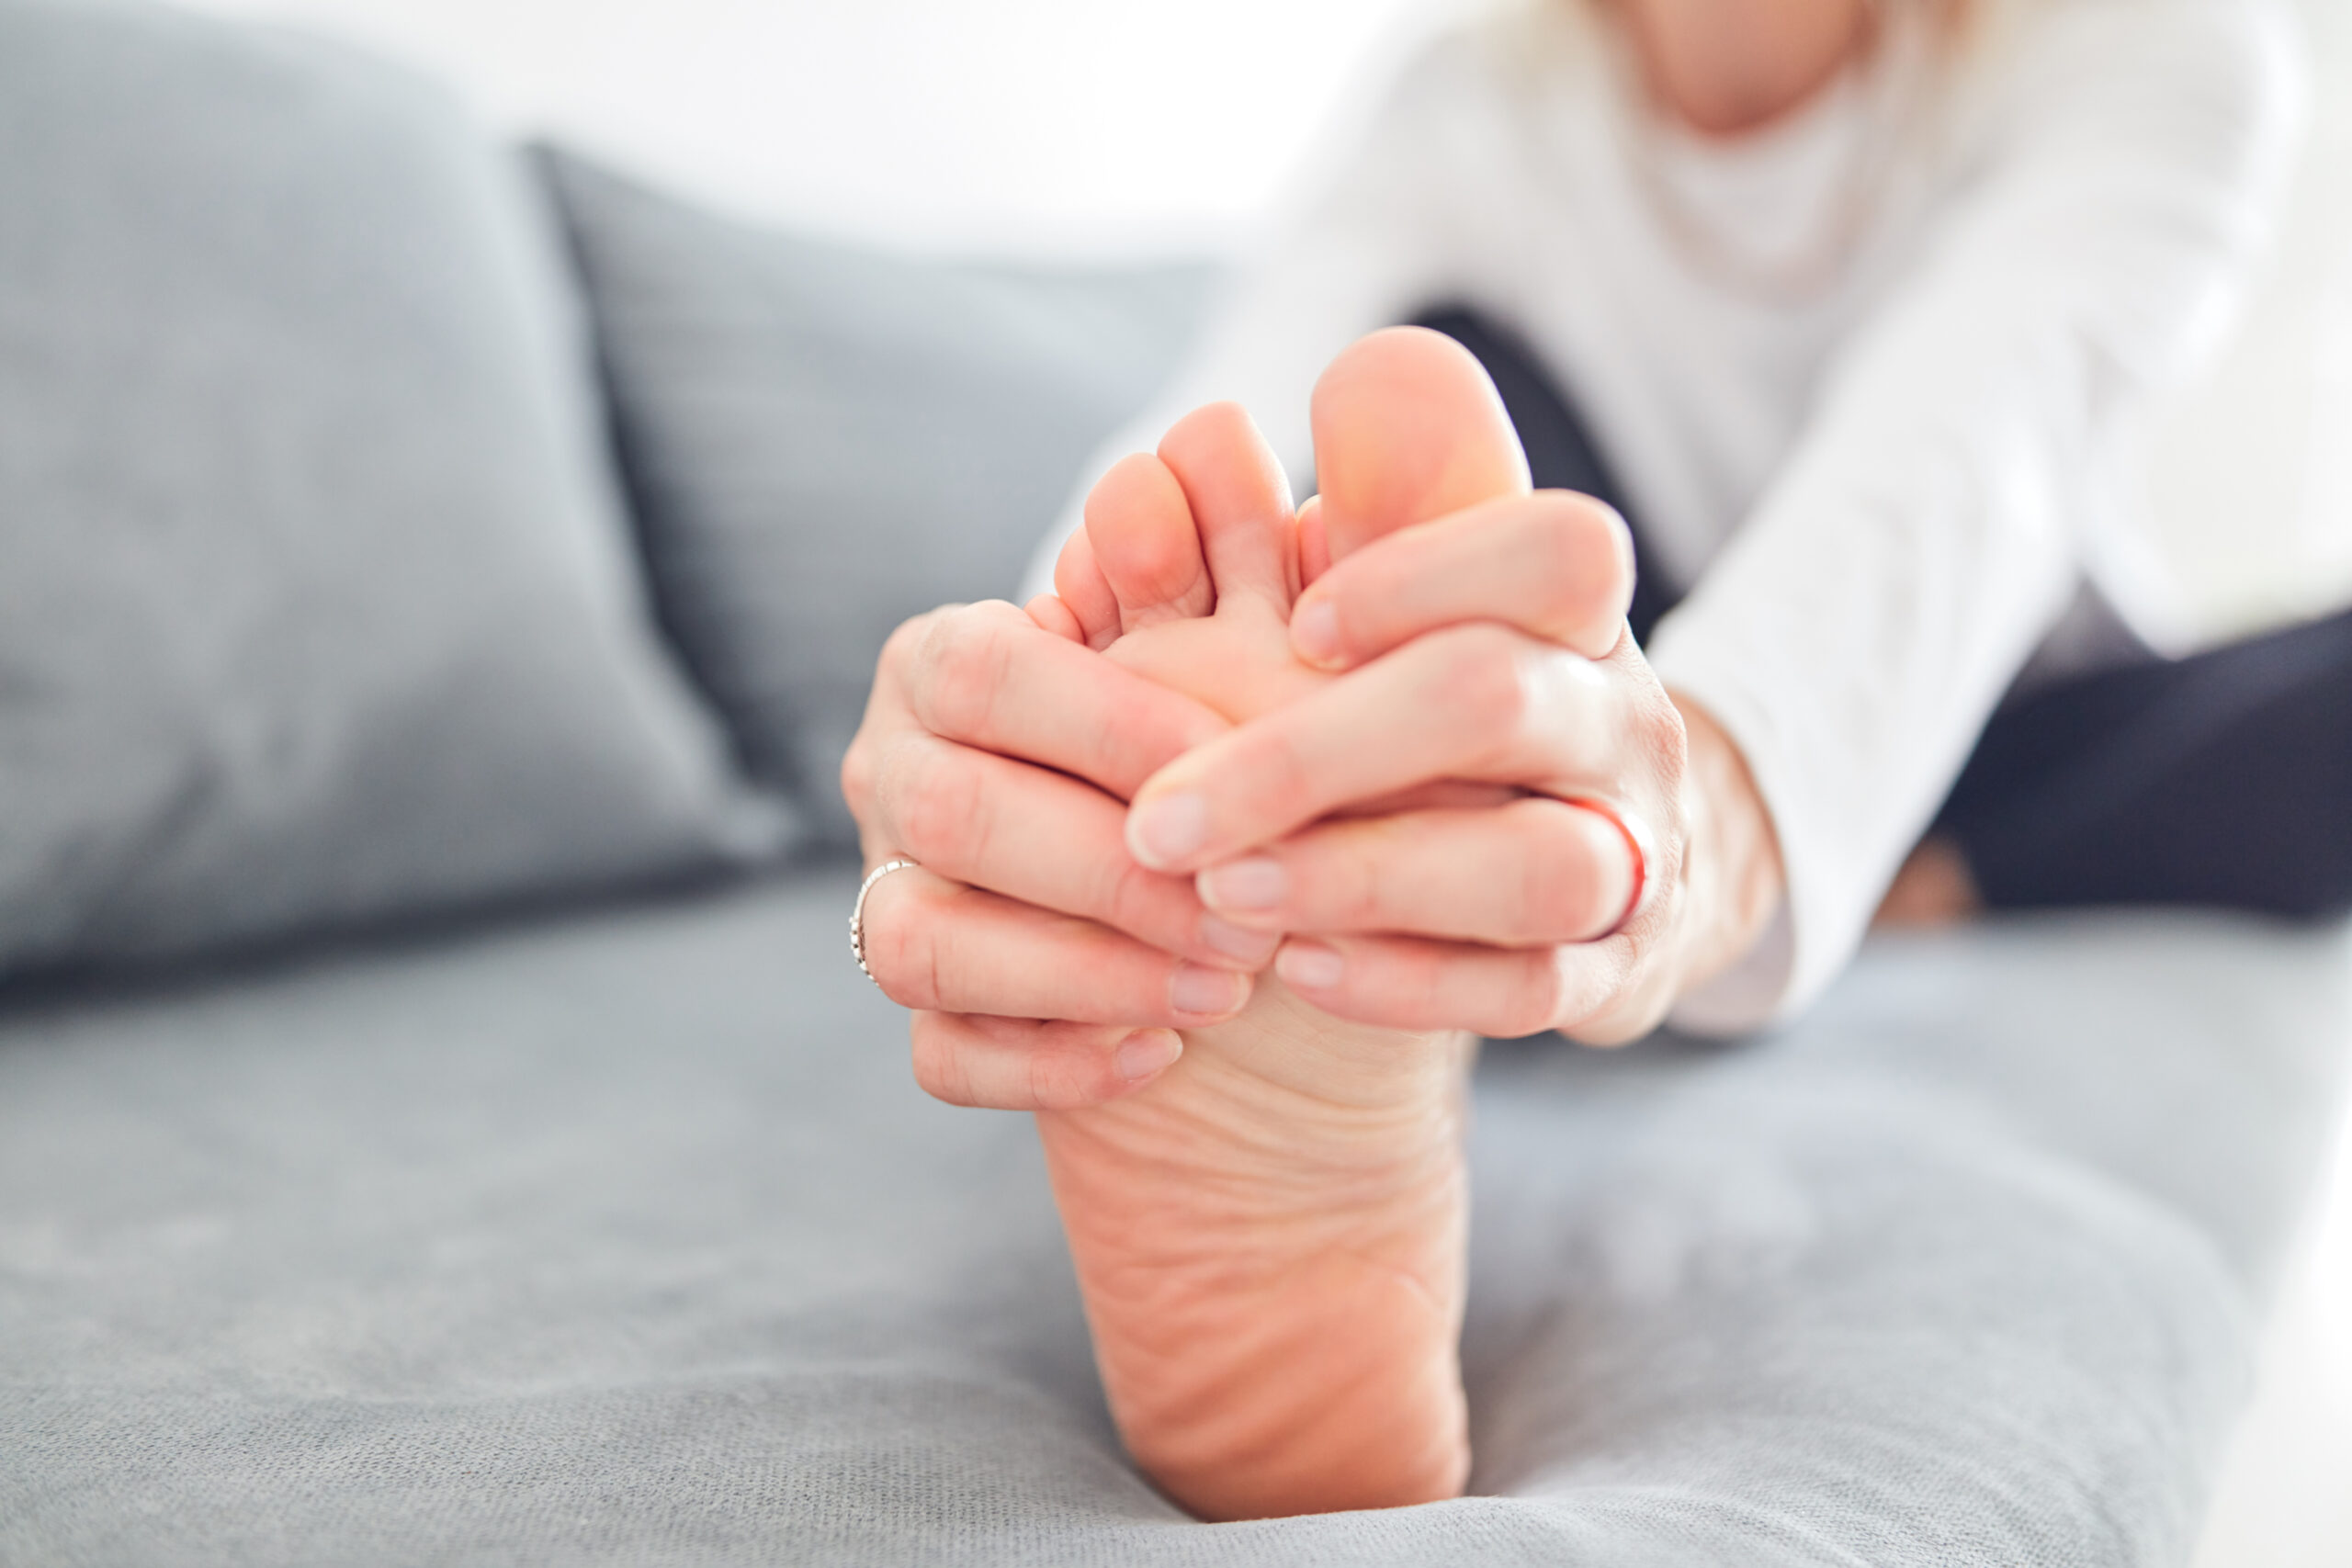 足のつけ根の痛み
足の悩みは何ですか？
種子骨炎
中足骨骨頭痛
NWPL社のファンクショナルオーソティックス®およびファンクショナルインソール
理学療法士、鍼灸師が担当する無料悩み相談"足のお悩み相談会" 指のつけ根の痛み